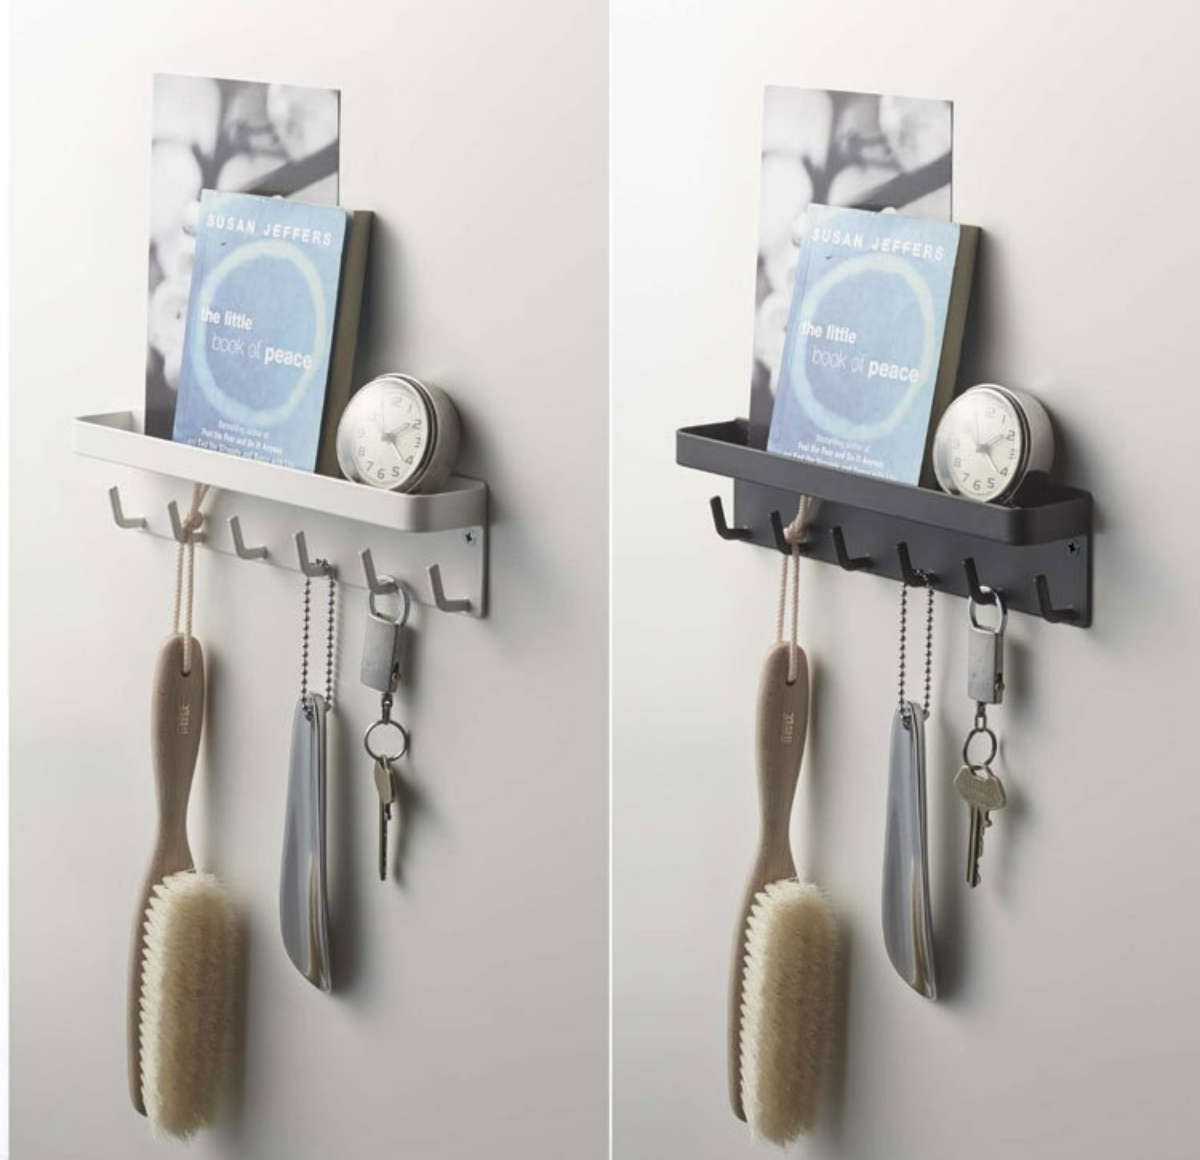 『スマート収納』マグネットキーフック&トレイ | スチール壁面に磁石で簡単取り付けのキーフック&トレイ。トレイ付きで荷受時の印鑑やサインがスムーズに。壁に付ければ、ディスプレイ感覚で小物を魅せて収納。|undefined